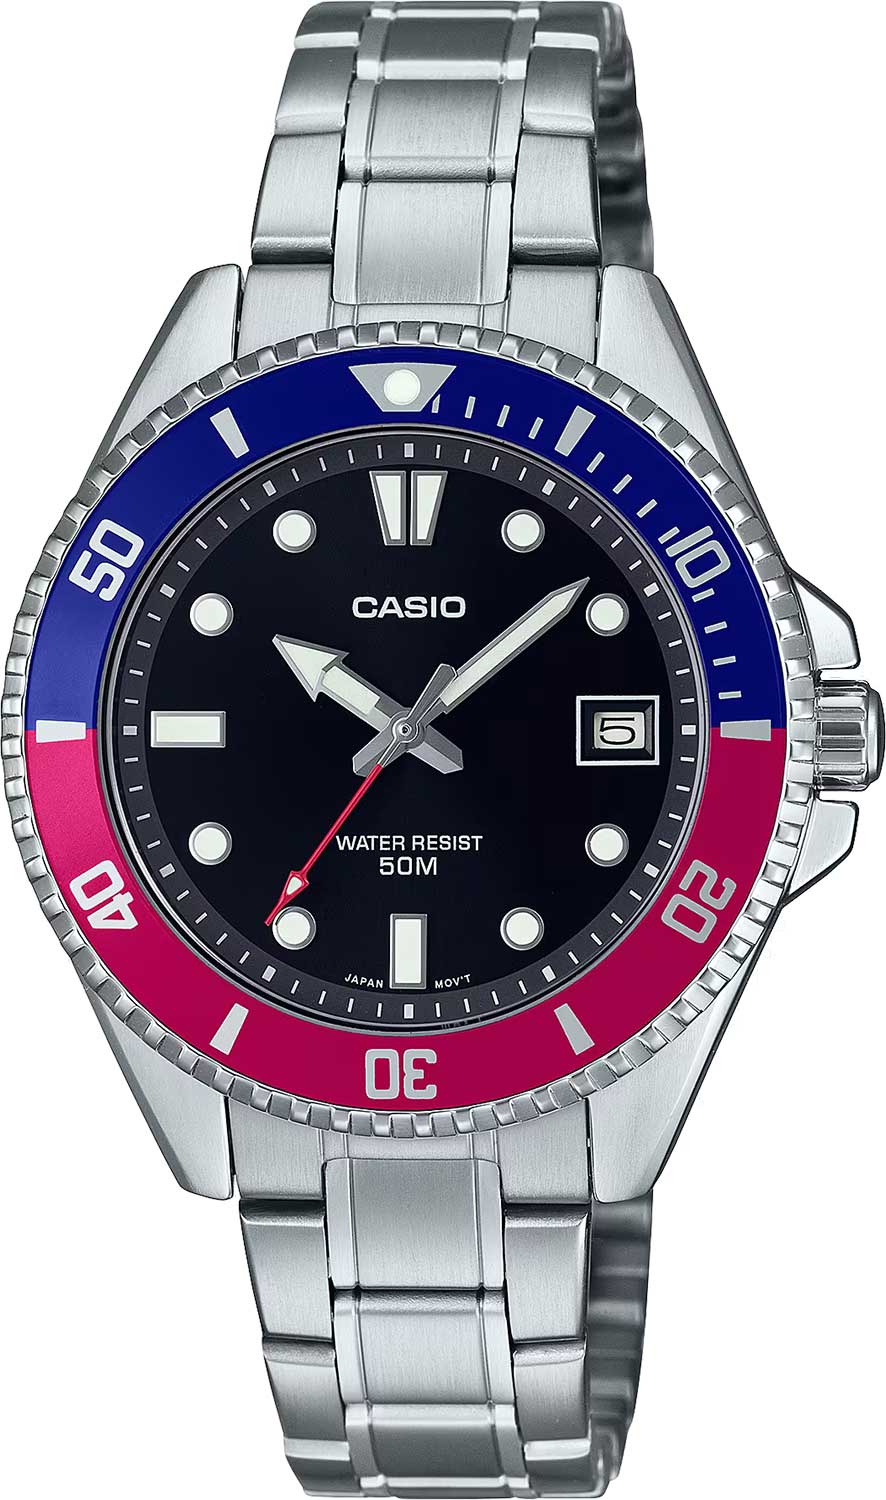 Наручные часы Casio Collection MDV-10D-1A3 — купить в интернет-магазине AllTime.ru по лучшей цене, фото, характеристики, инструкция, описание